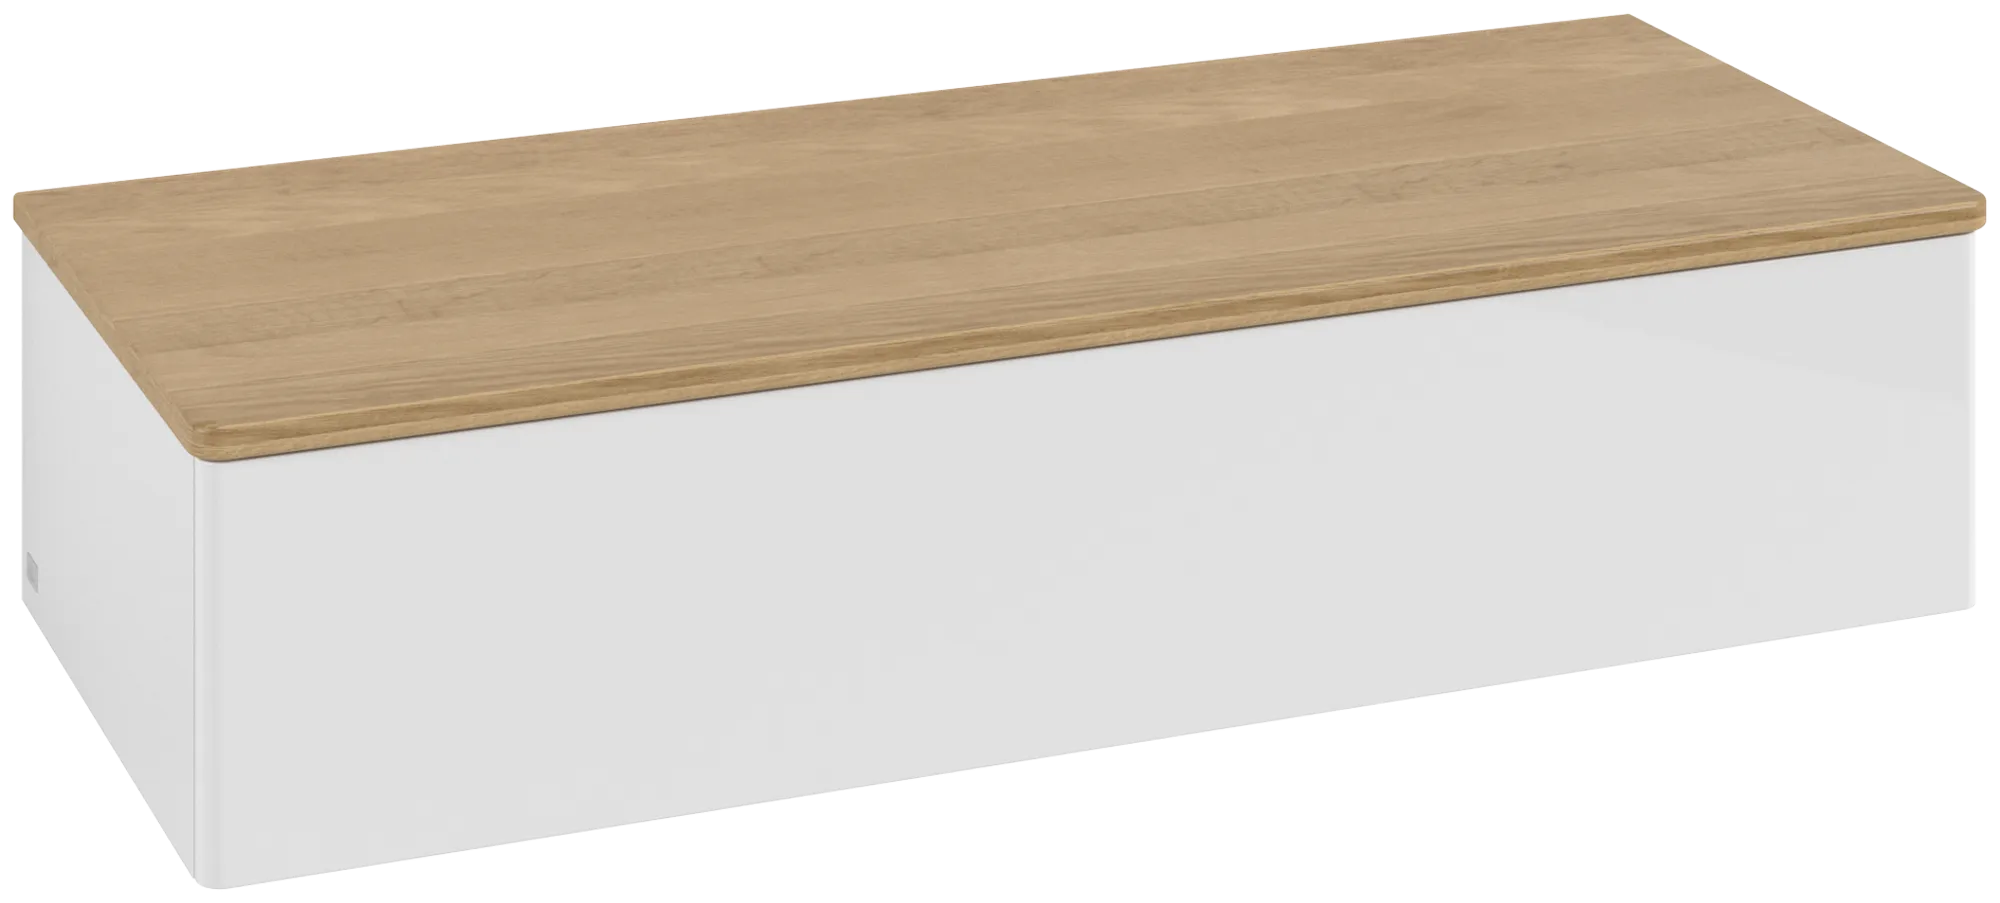 Bild von VILLEROY BOCH Antao Sideboard, mit Beleuchtung, 1 Auszug, 1200 x 268 x 500 mm, Front ohne Struktur, Glossy White Lacquer / Honey Oak #L41001GF